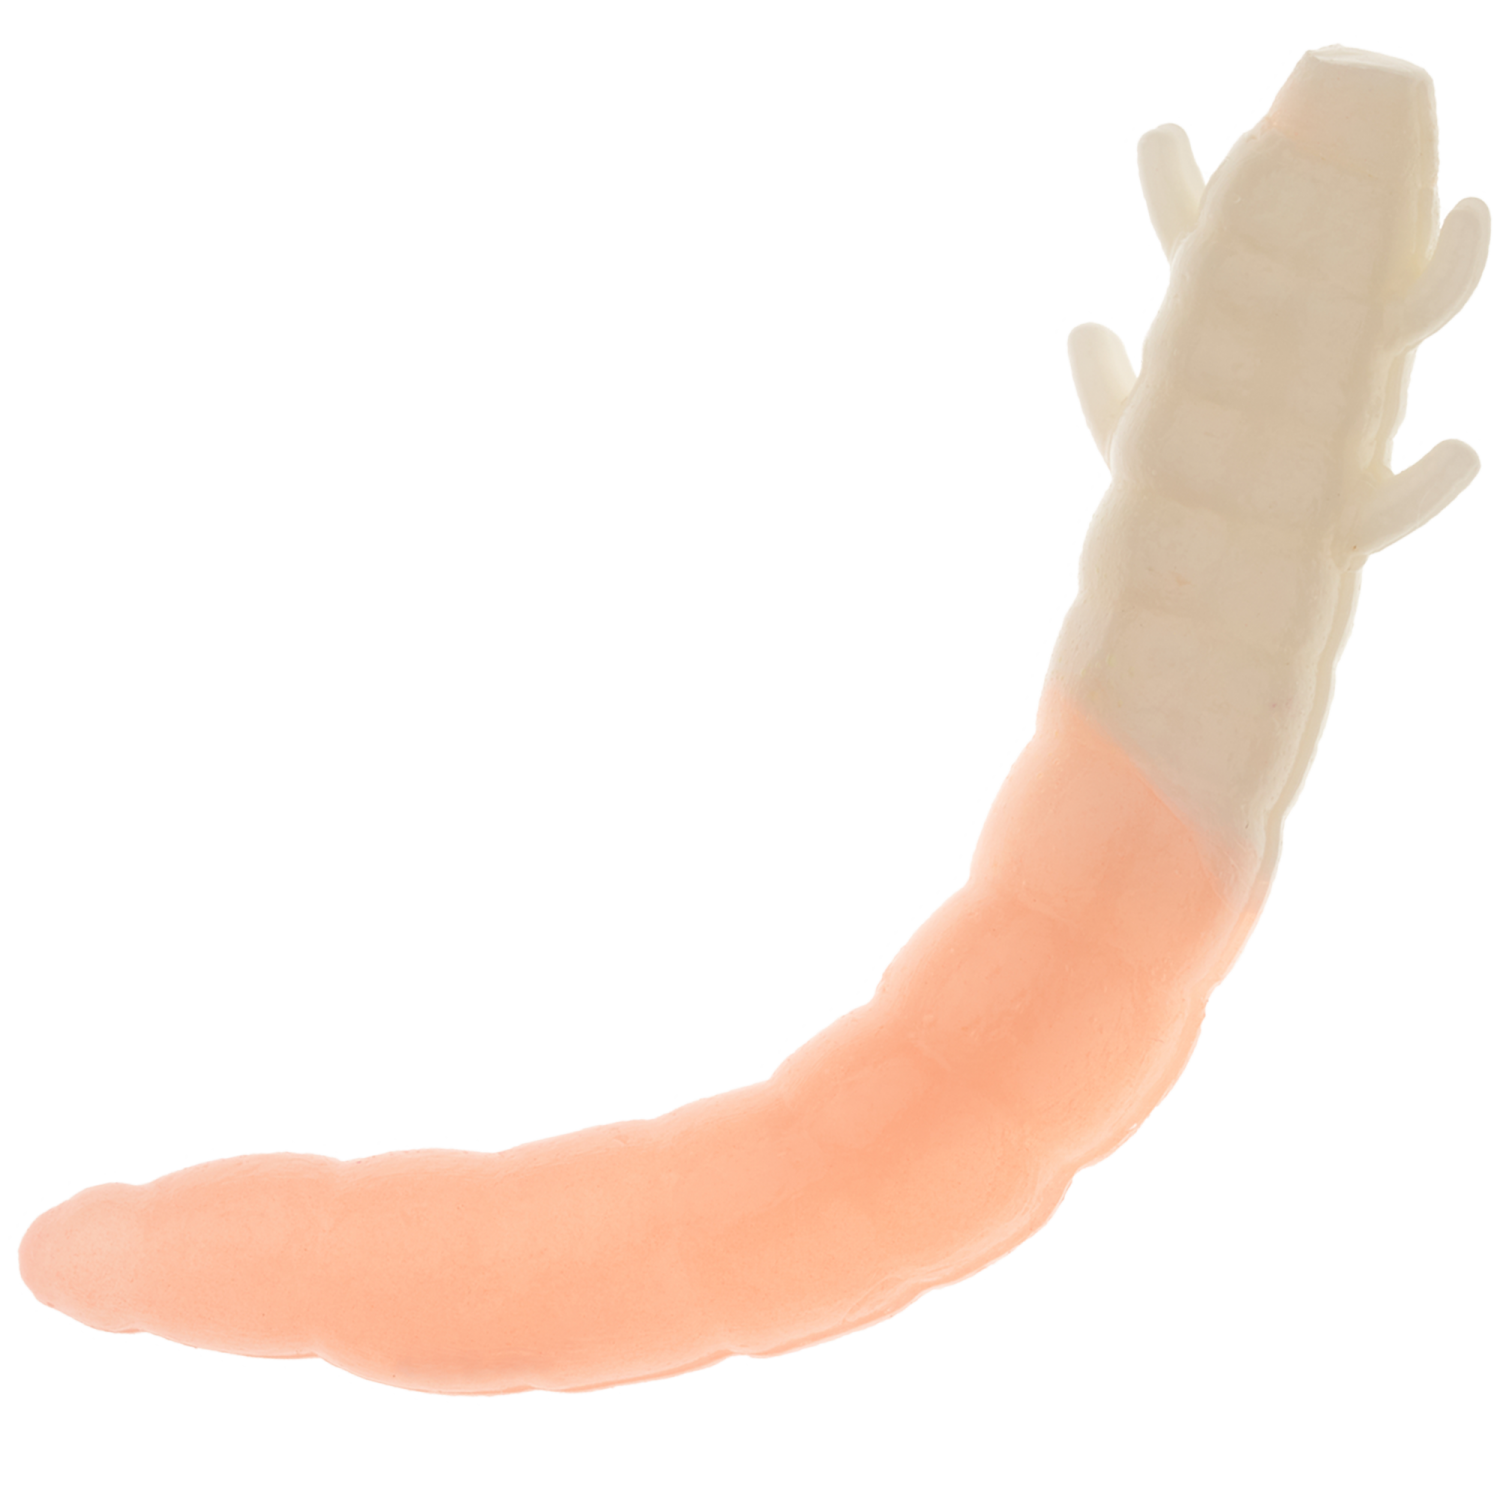 Приманка силиконовая Soorex Pro King Worm 55мм Cheese #226 White/Pink glow